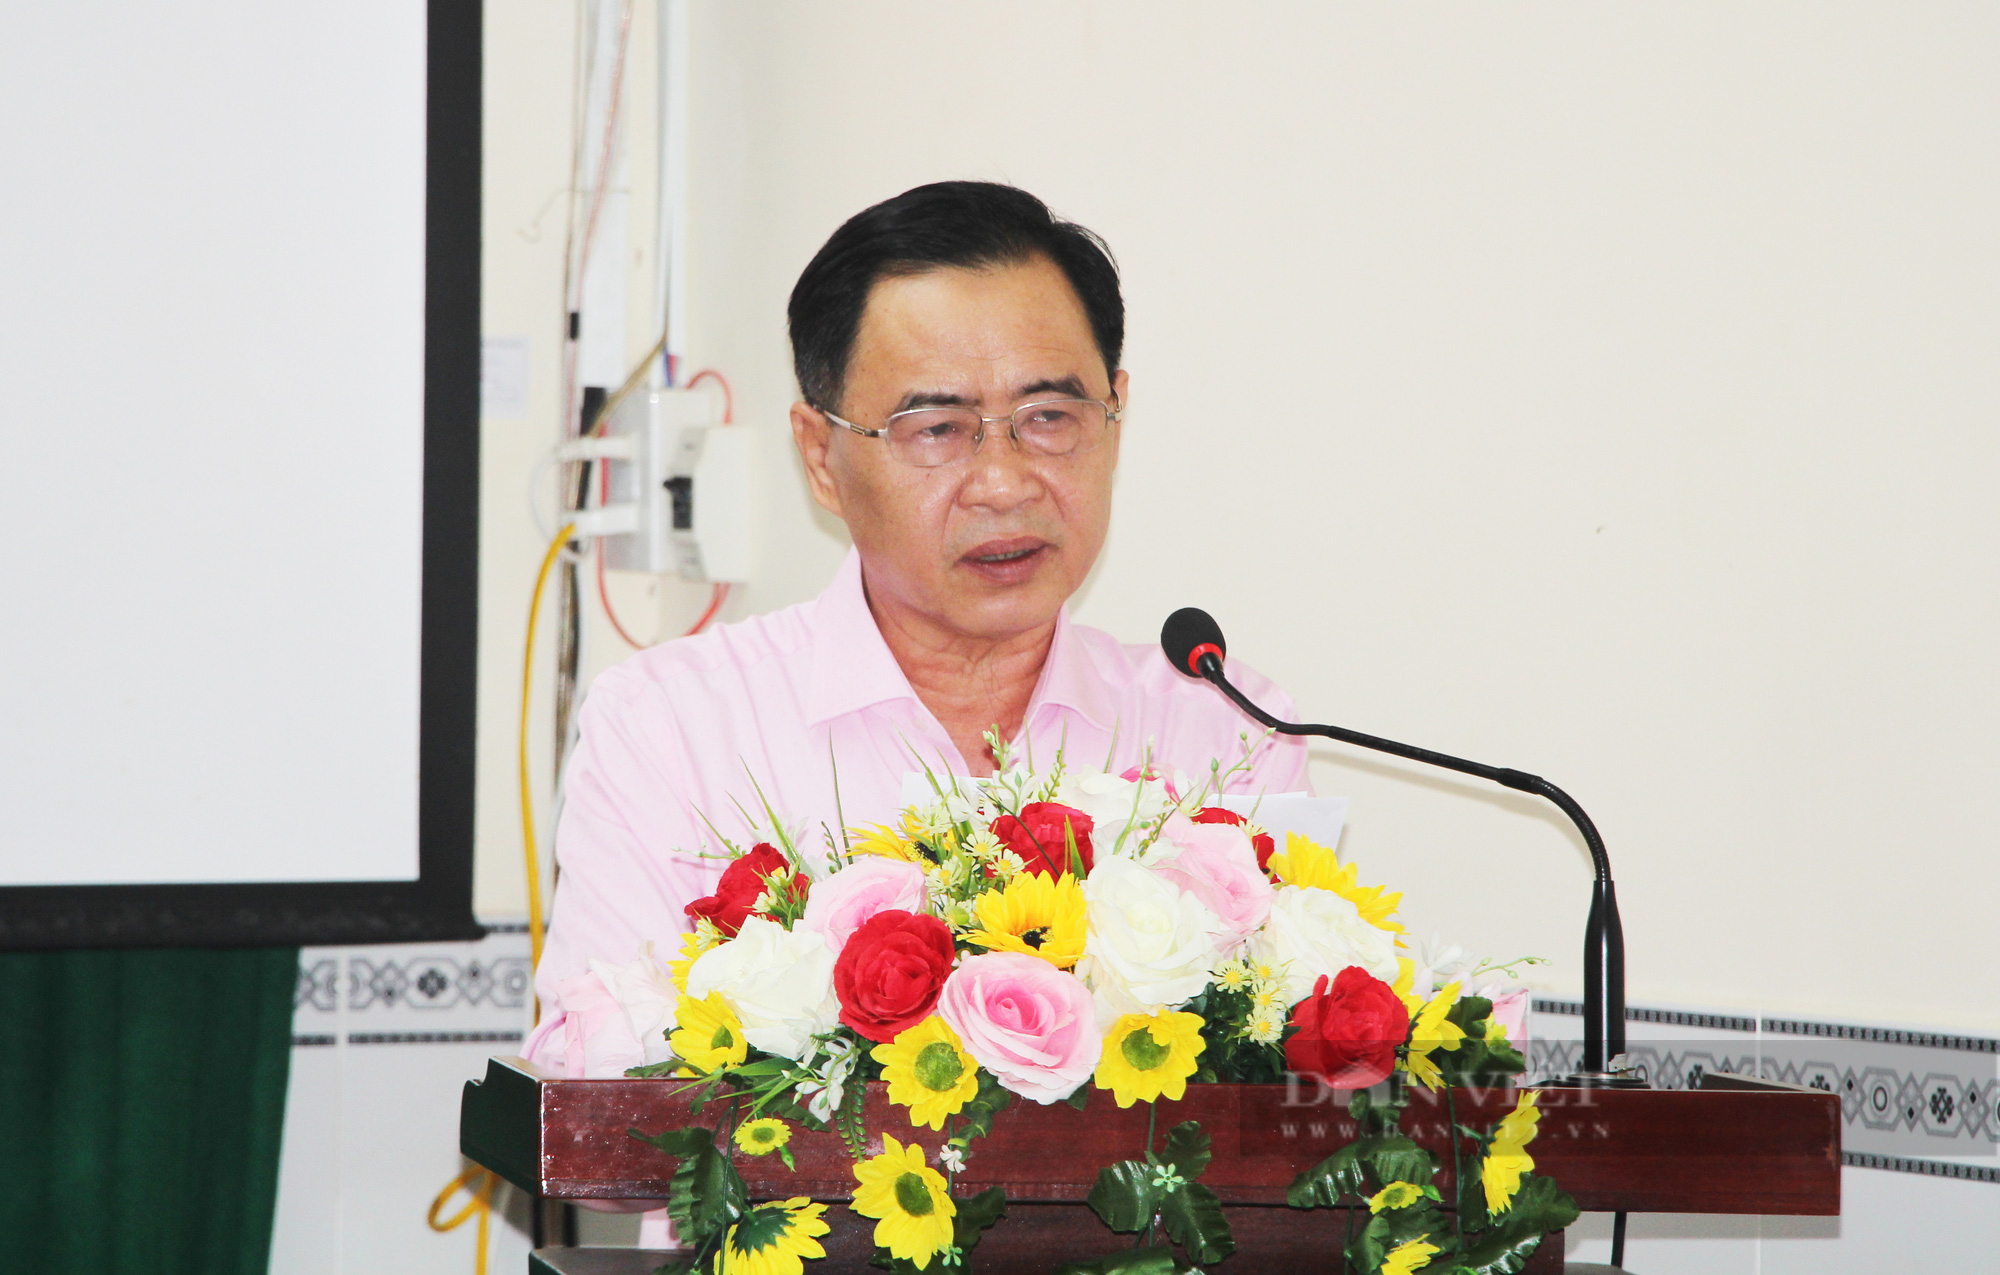 Phó Chủ tịch Hội NDVN Bùi Thị Thơm: Hội ND Cần Thơ giúp nông dân liên kết sản xuất, giảm chi phí đầu vào- Ảnh 2.